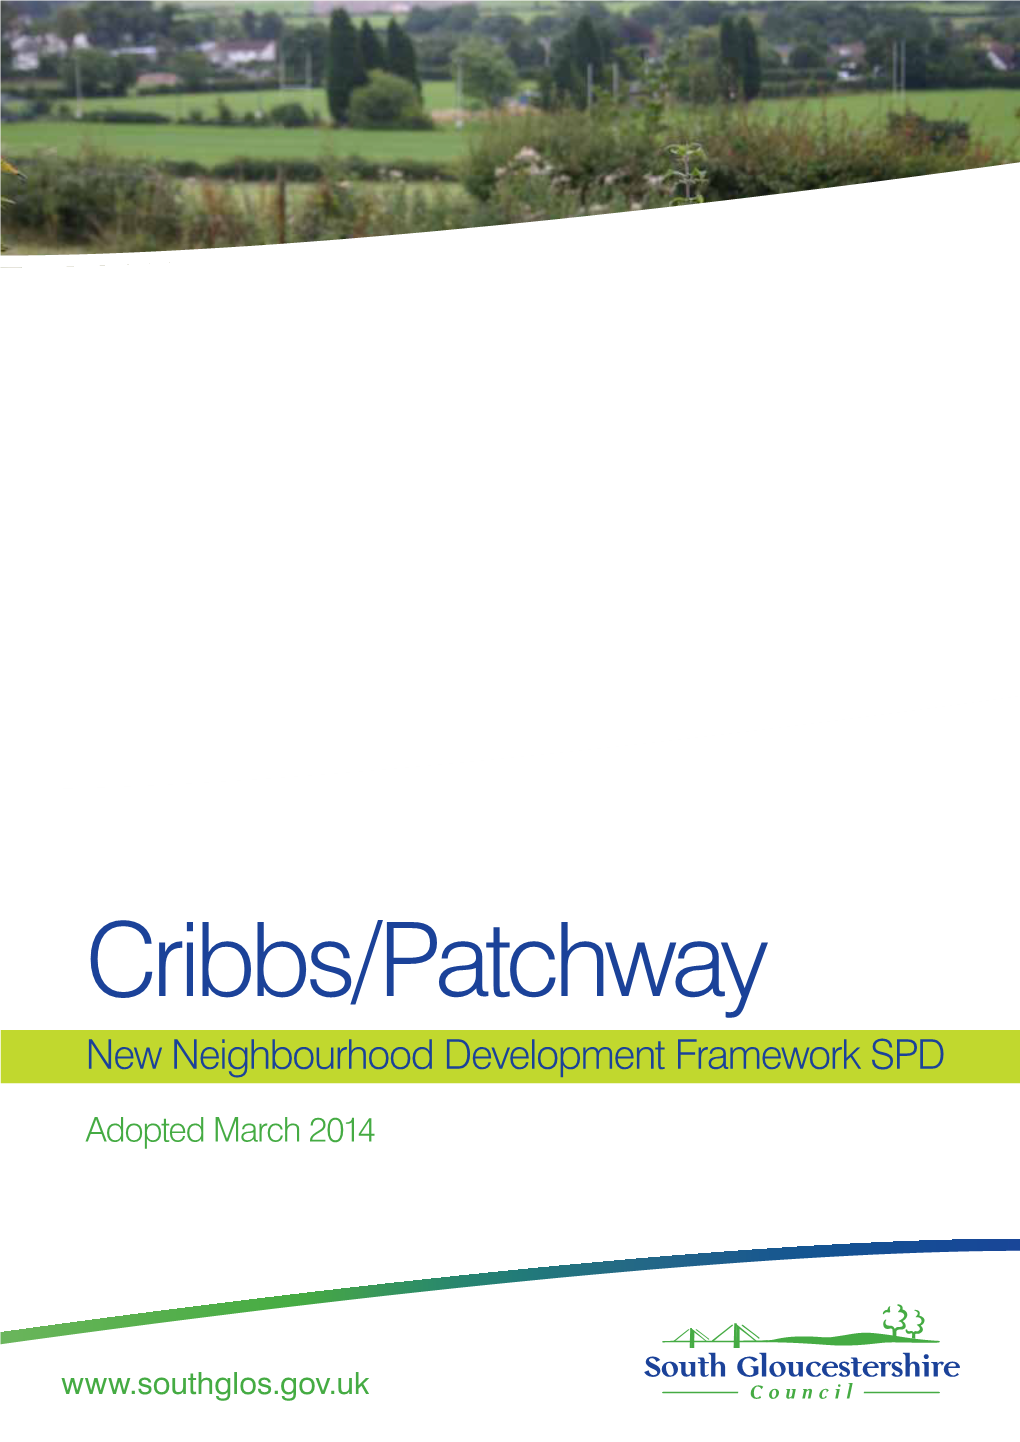 Cribbs/Patchway New Neighbourhood Development Framework SPD